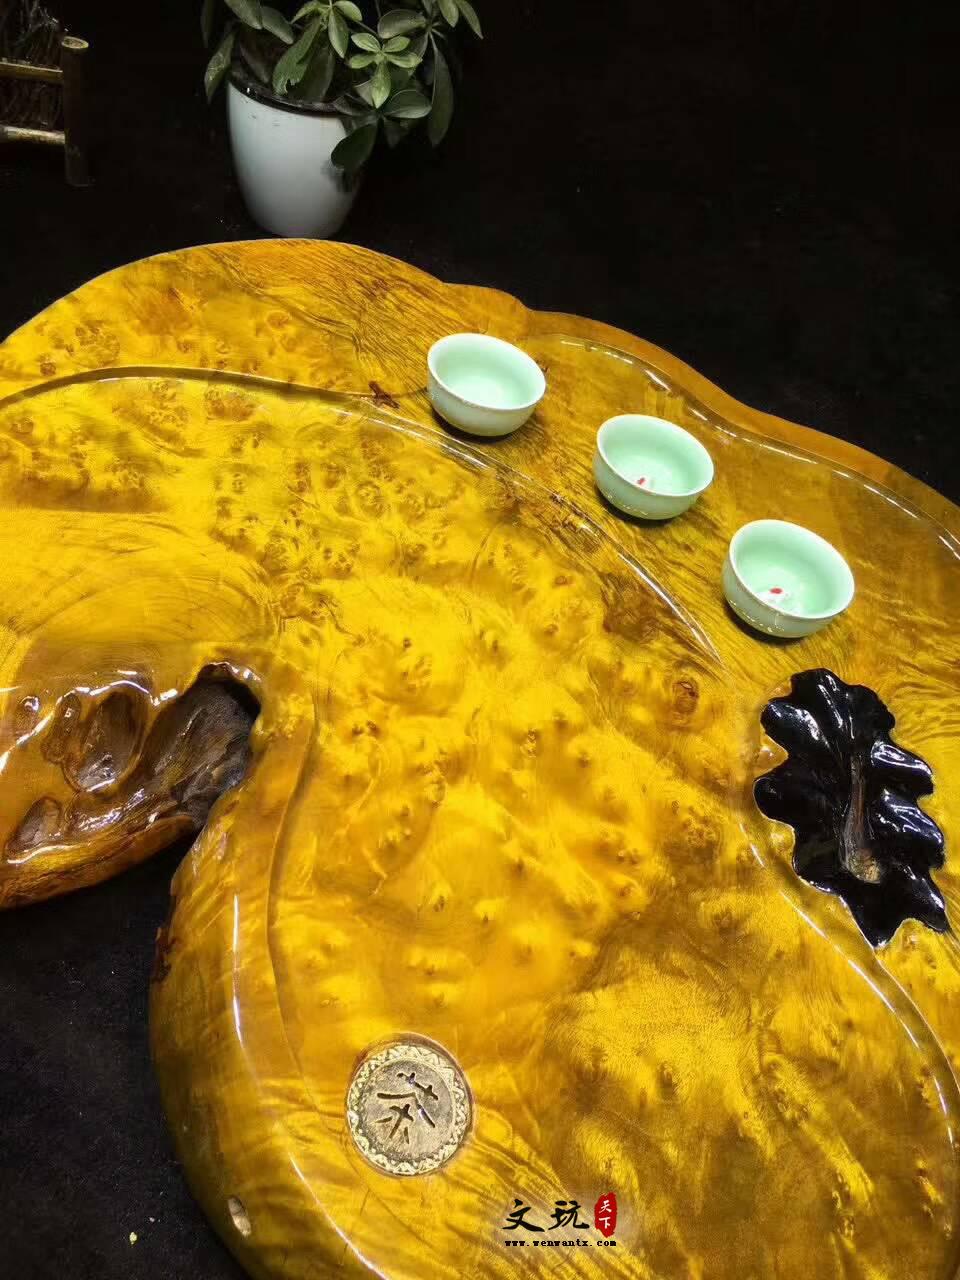 黄金樟茶桌带瘤疤 板面干净颜色金黄纹理清晰提升格调-4